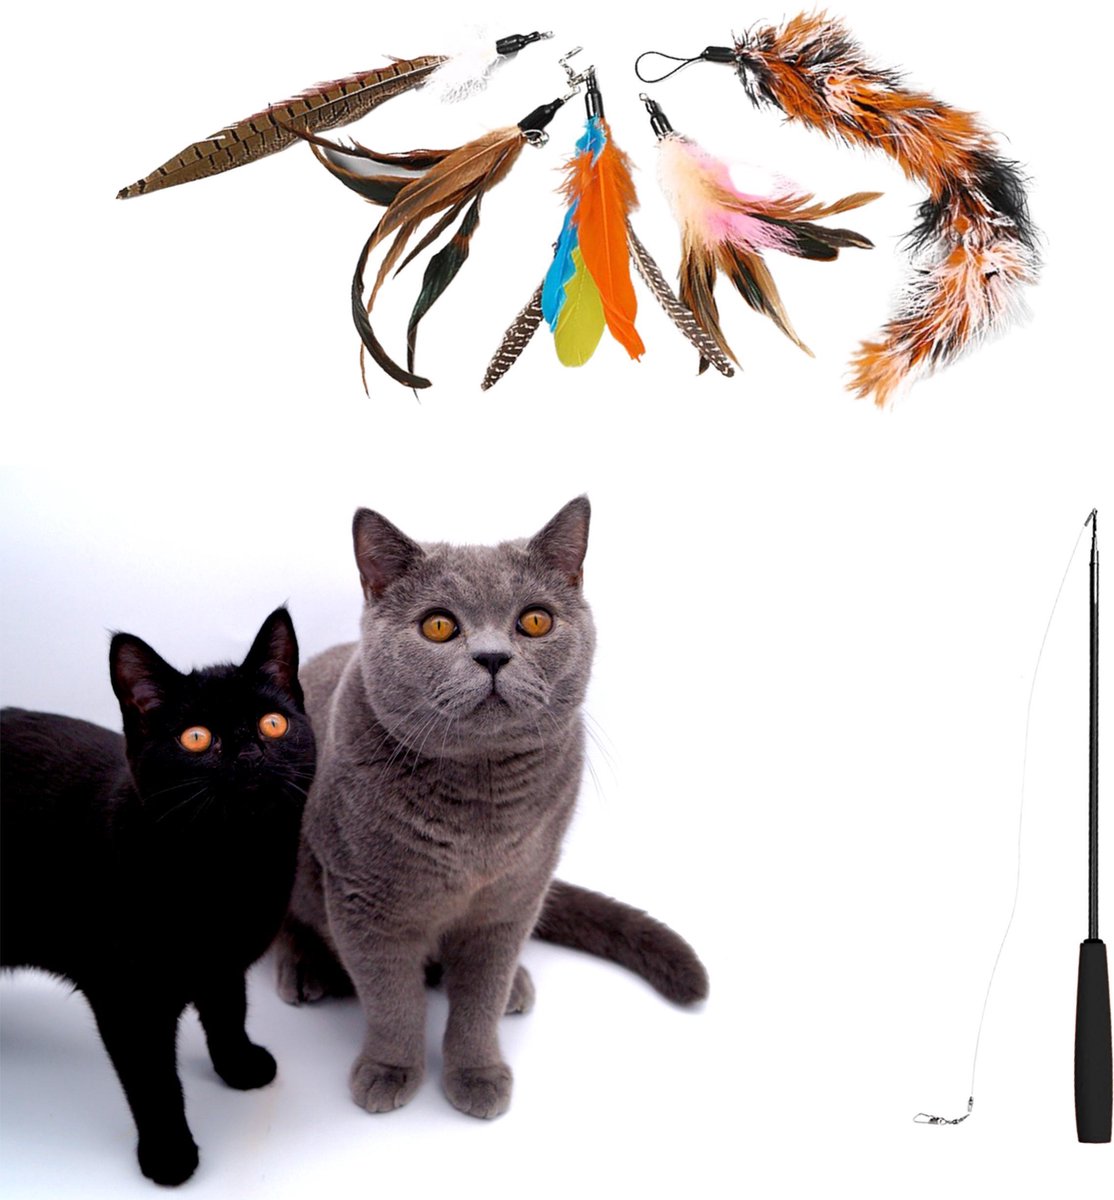 Make Me Purr Kattenhengel met 5 Hangers (Zwart) - Speelgoed Hengel voor Katten - Kat Speelhengel met Veren - Kitten Kattenplager met Veer - Kattenspeelgoed - Kattenspeeltjes - Make Me Purr